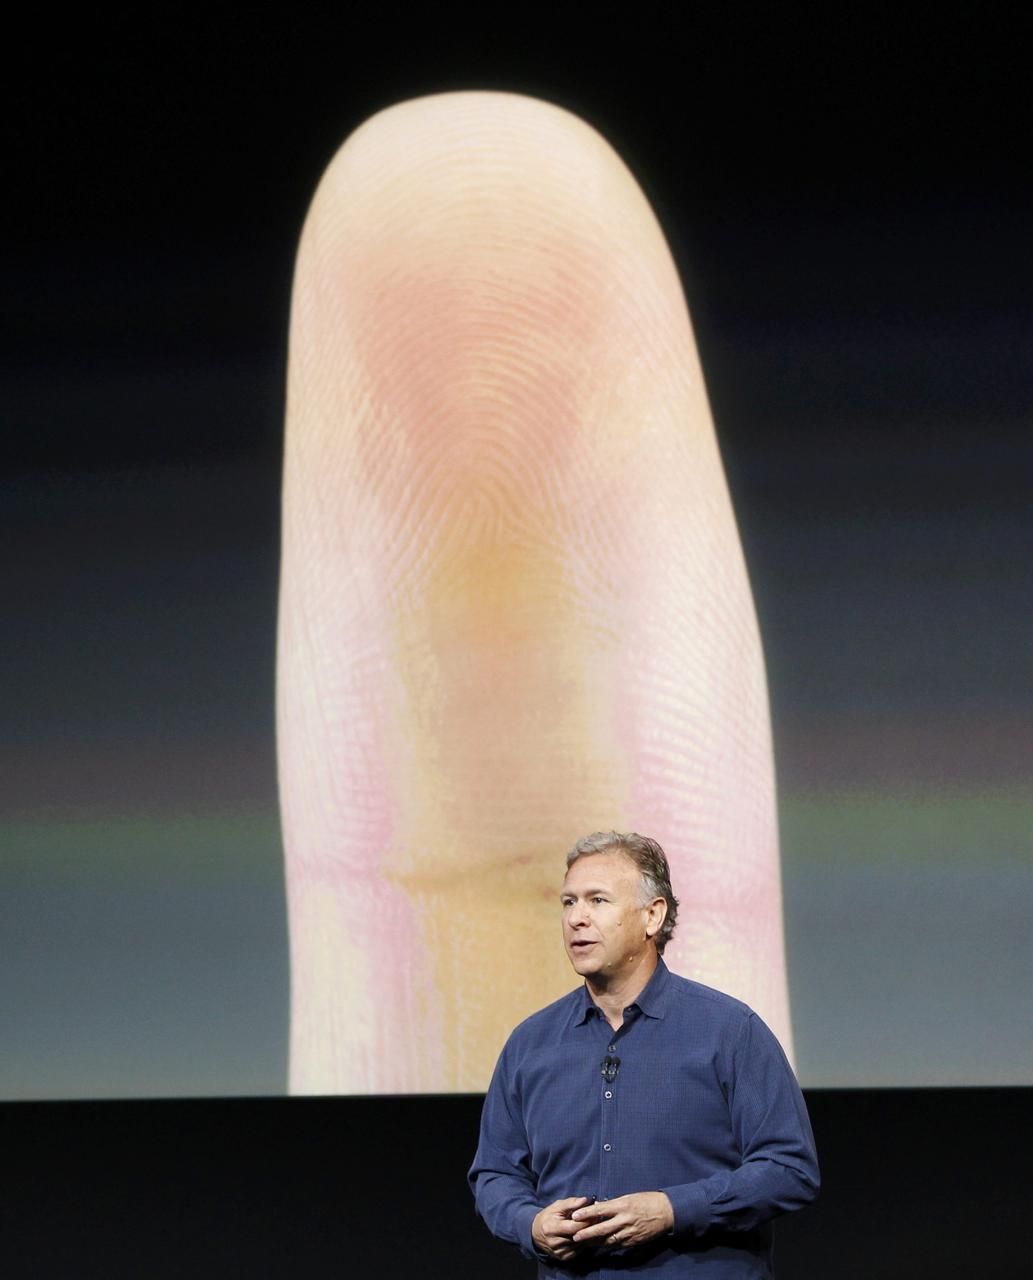 Phil Schiller Apple iPhone 5S